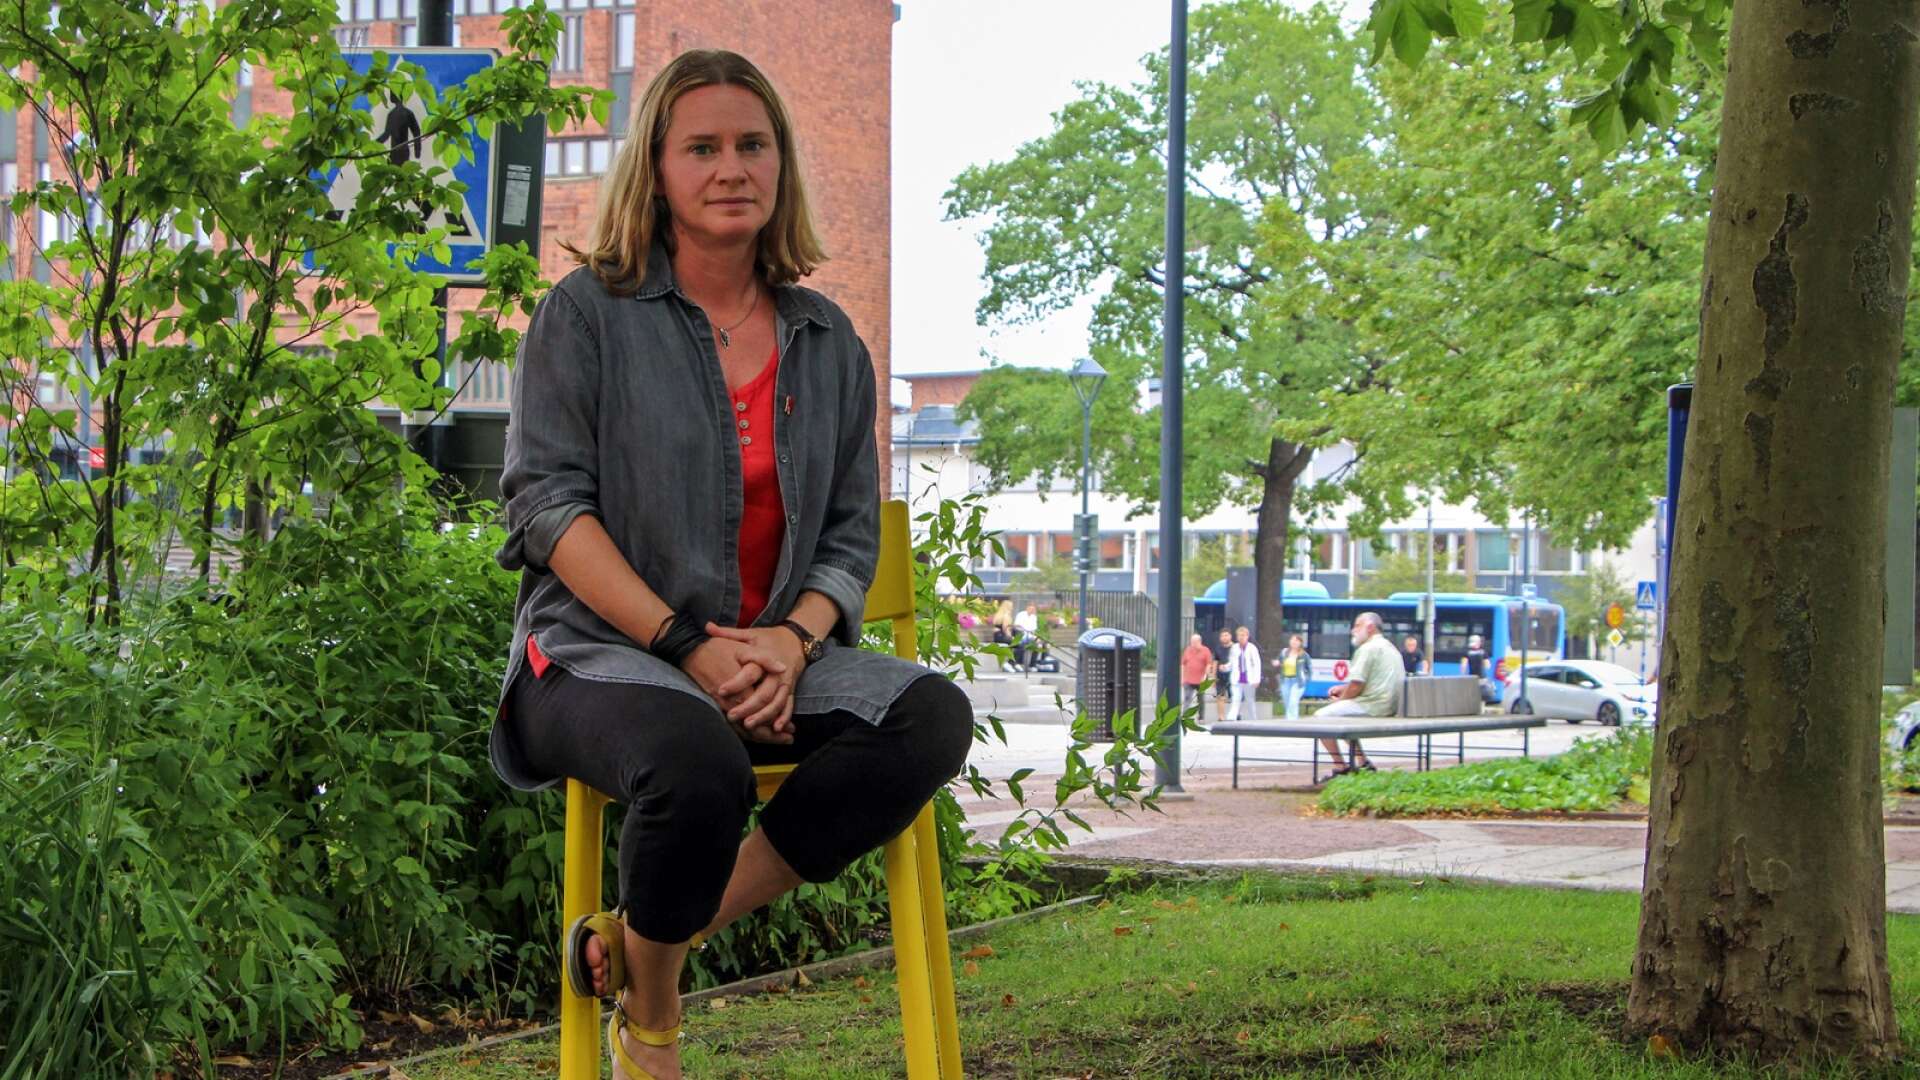 Annika Holmén (V) vill se lägre biljettpriser och kortare arbetsdagar för vårdpersonalen. Hon har valt en fotograferingsplats i det gröna med kollektivtrafik i bakgrunden.